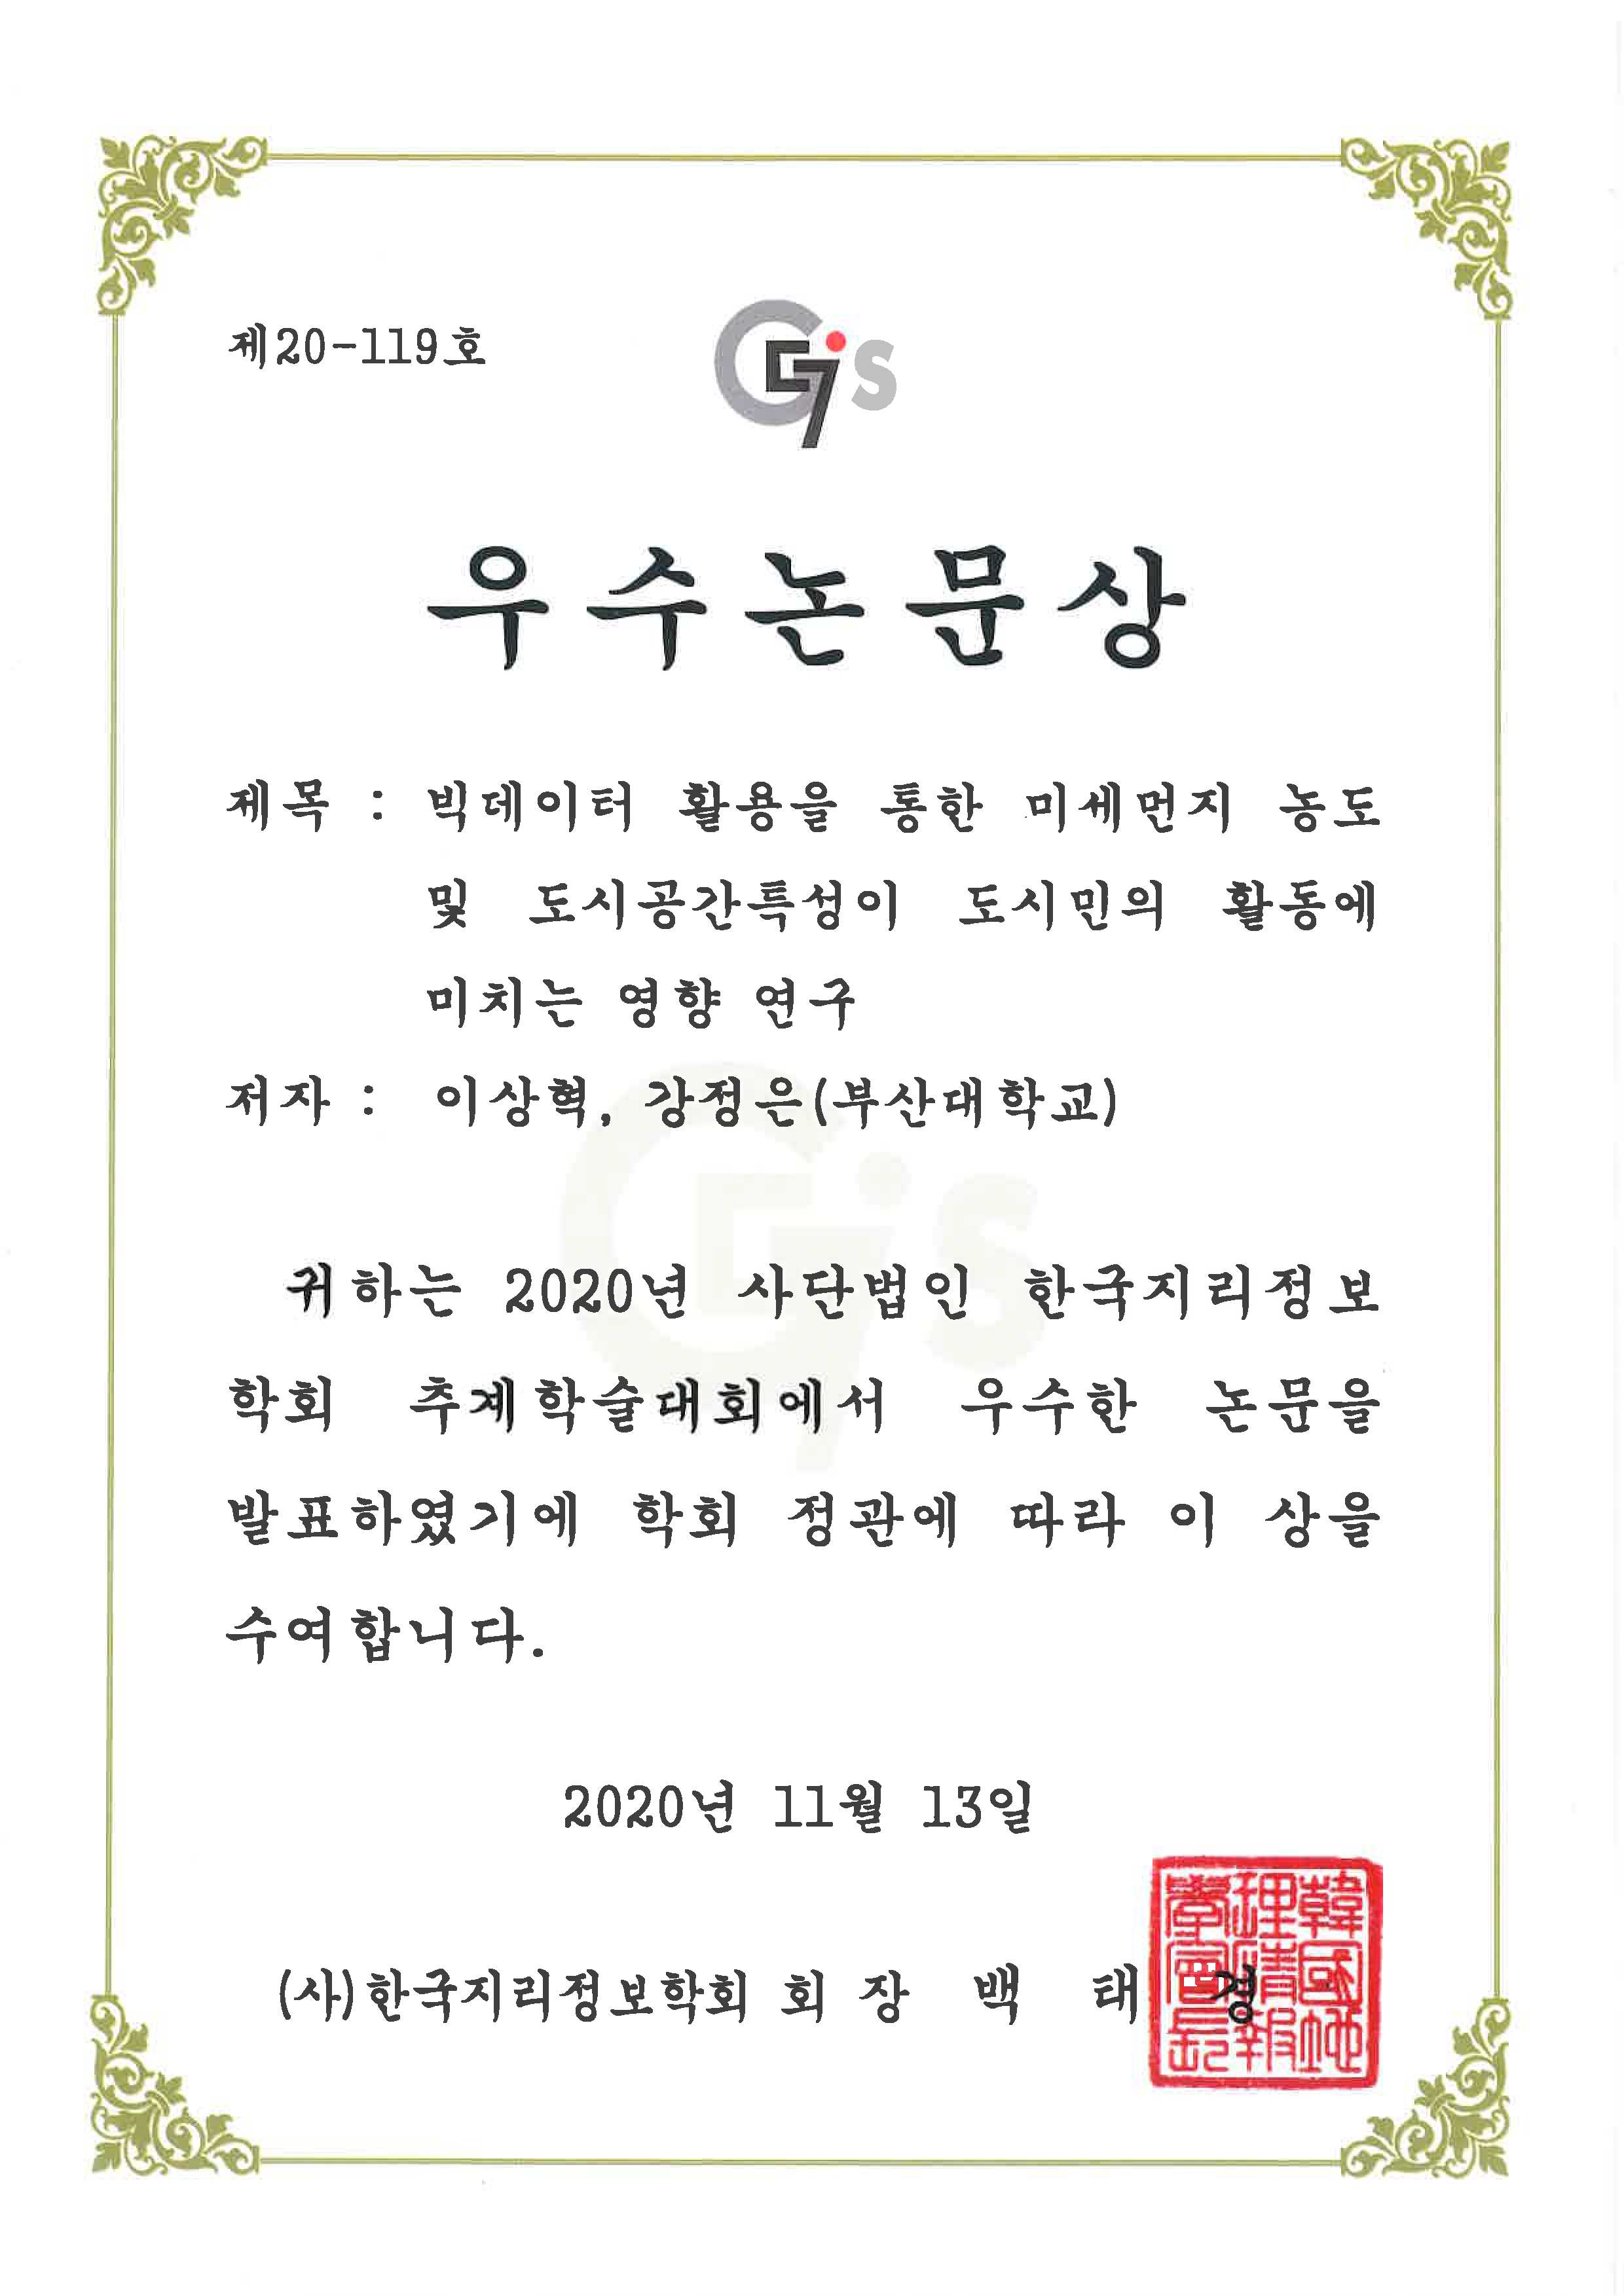 2020 한국지리정보학회 추계학술대회 6_우수논문상_이상혁.png